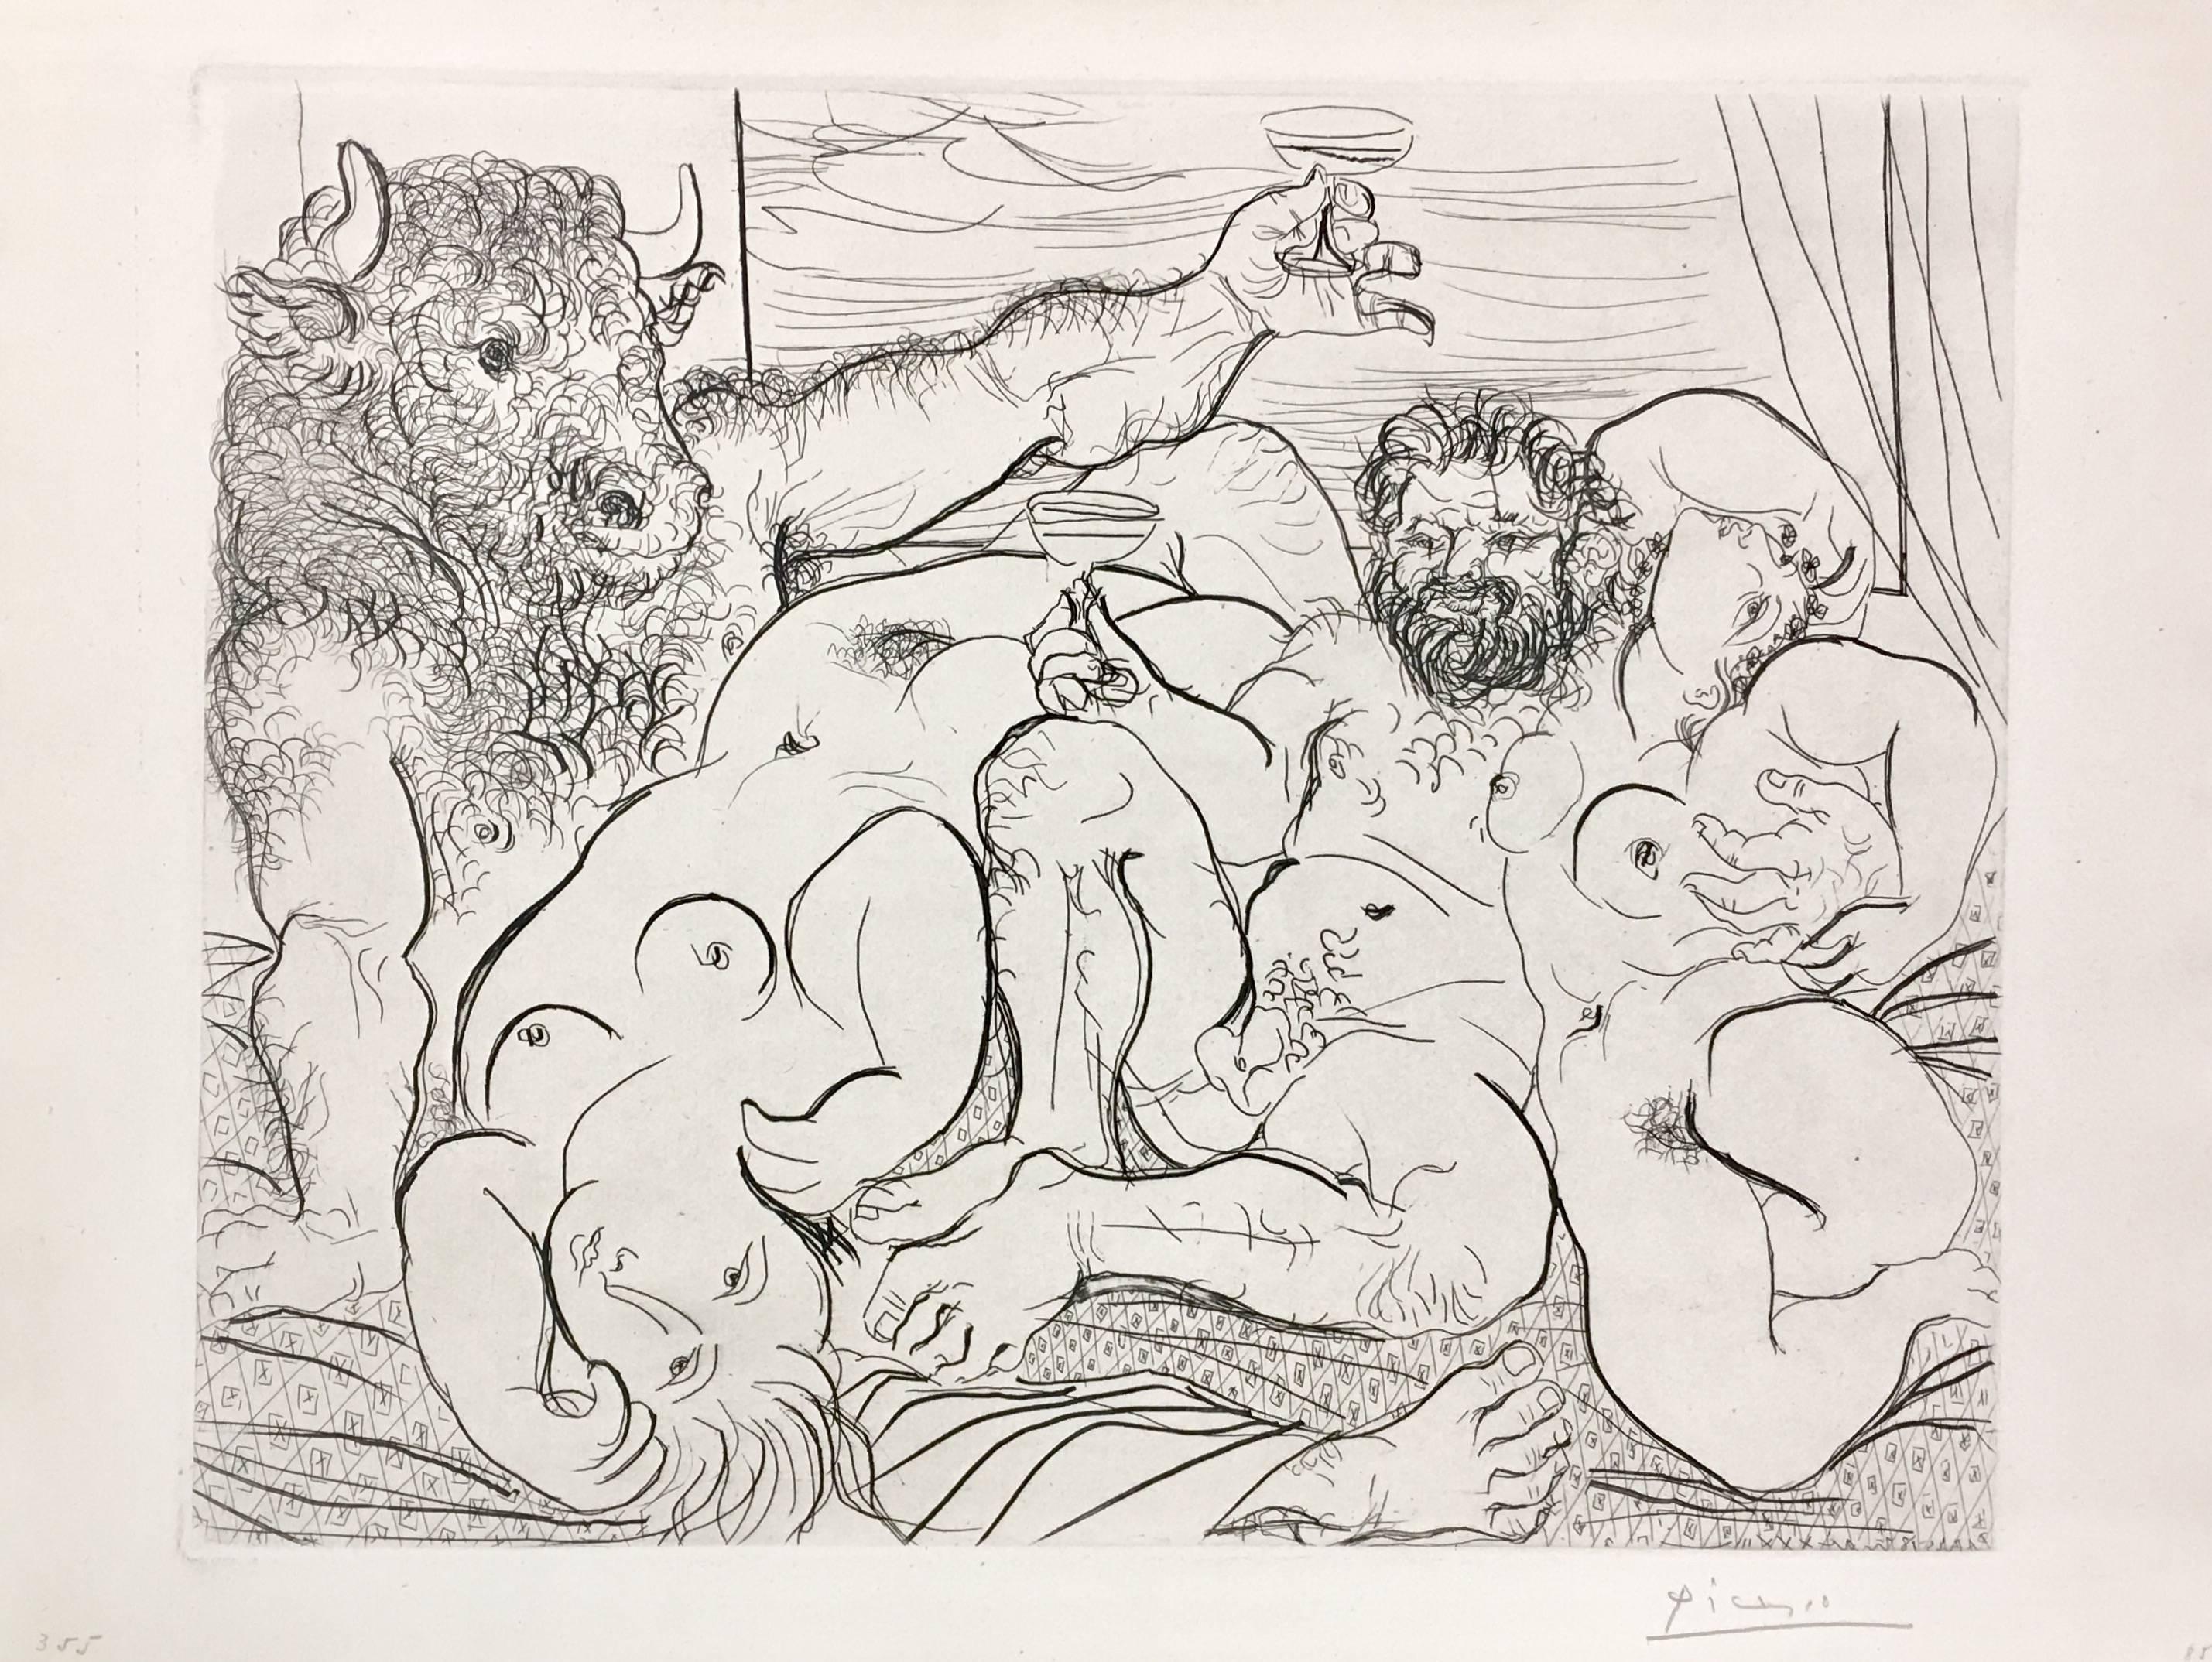 Pablo Picasso, "Scène bacchique au Minotaure" from La Suite Vollard, etching 